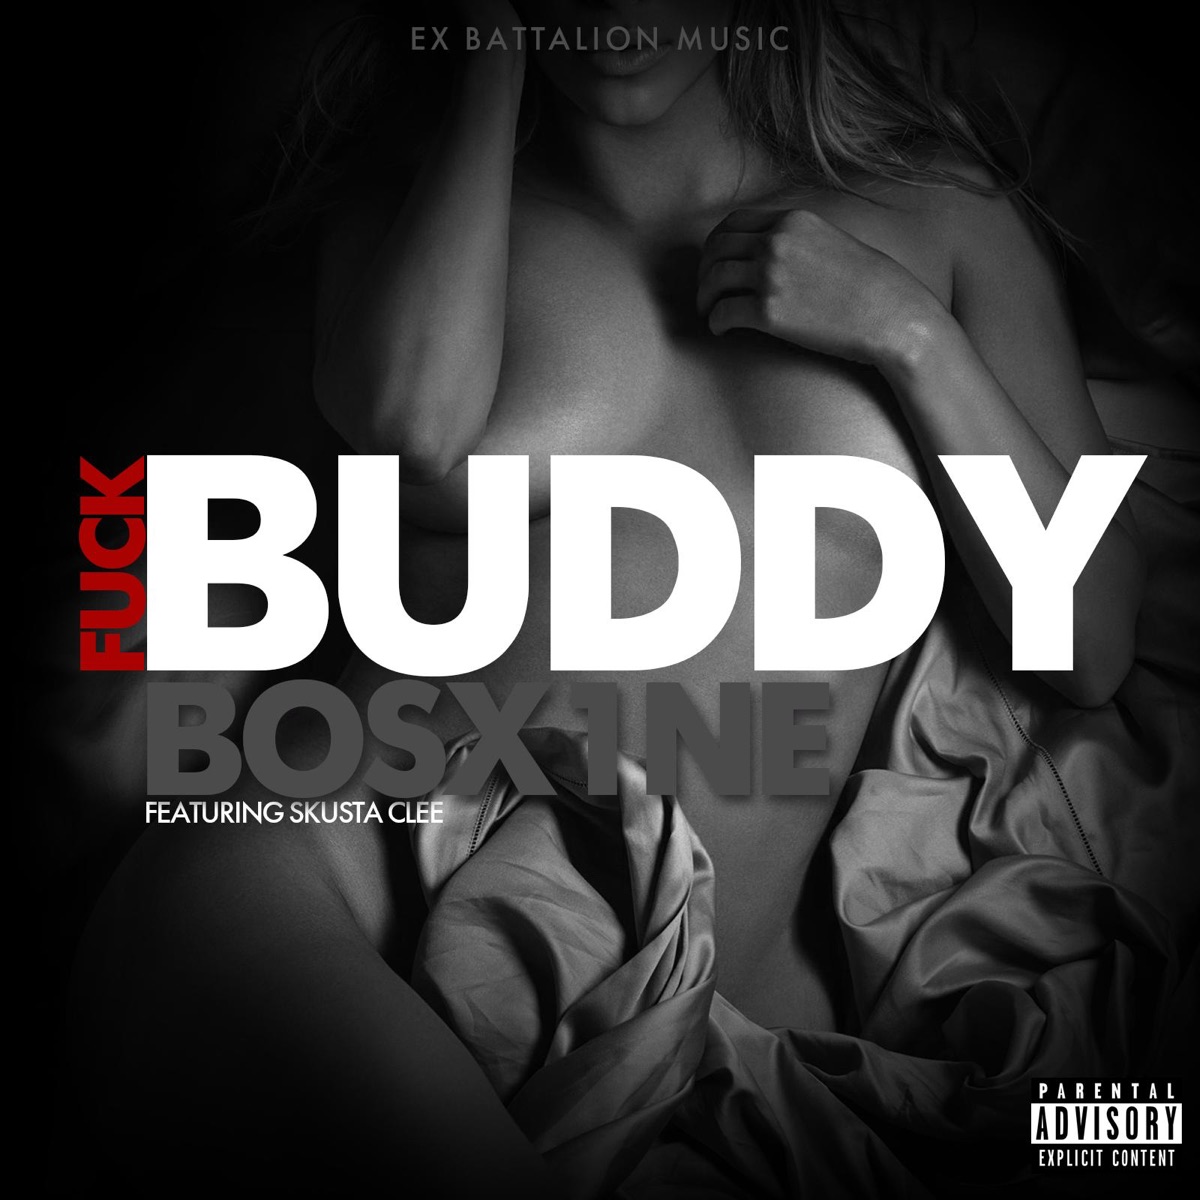 Fuck Buddy (feat. Skusta Clee) - Single by Bosx1ne on Apple Music